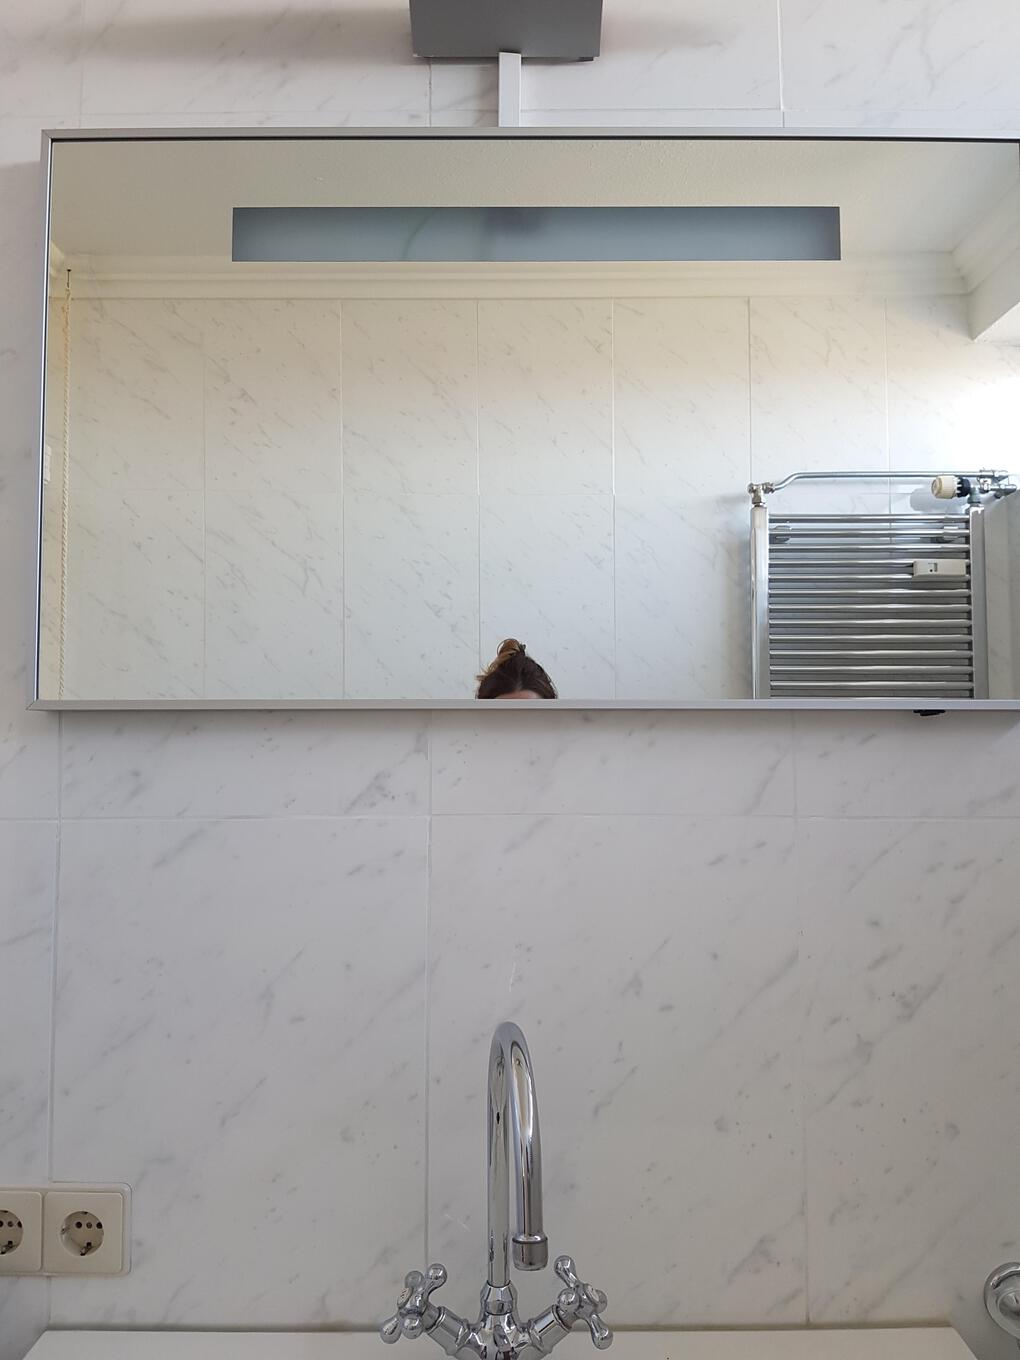 20 случаев, когда зеркала в ванной комнате устраивали людям камеди-шоу 77